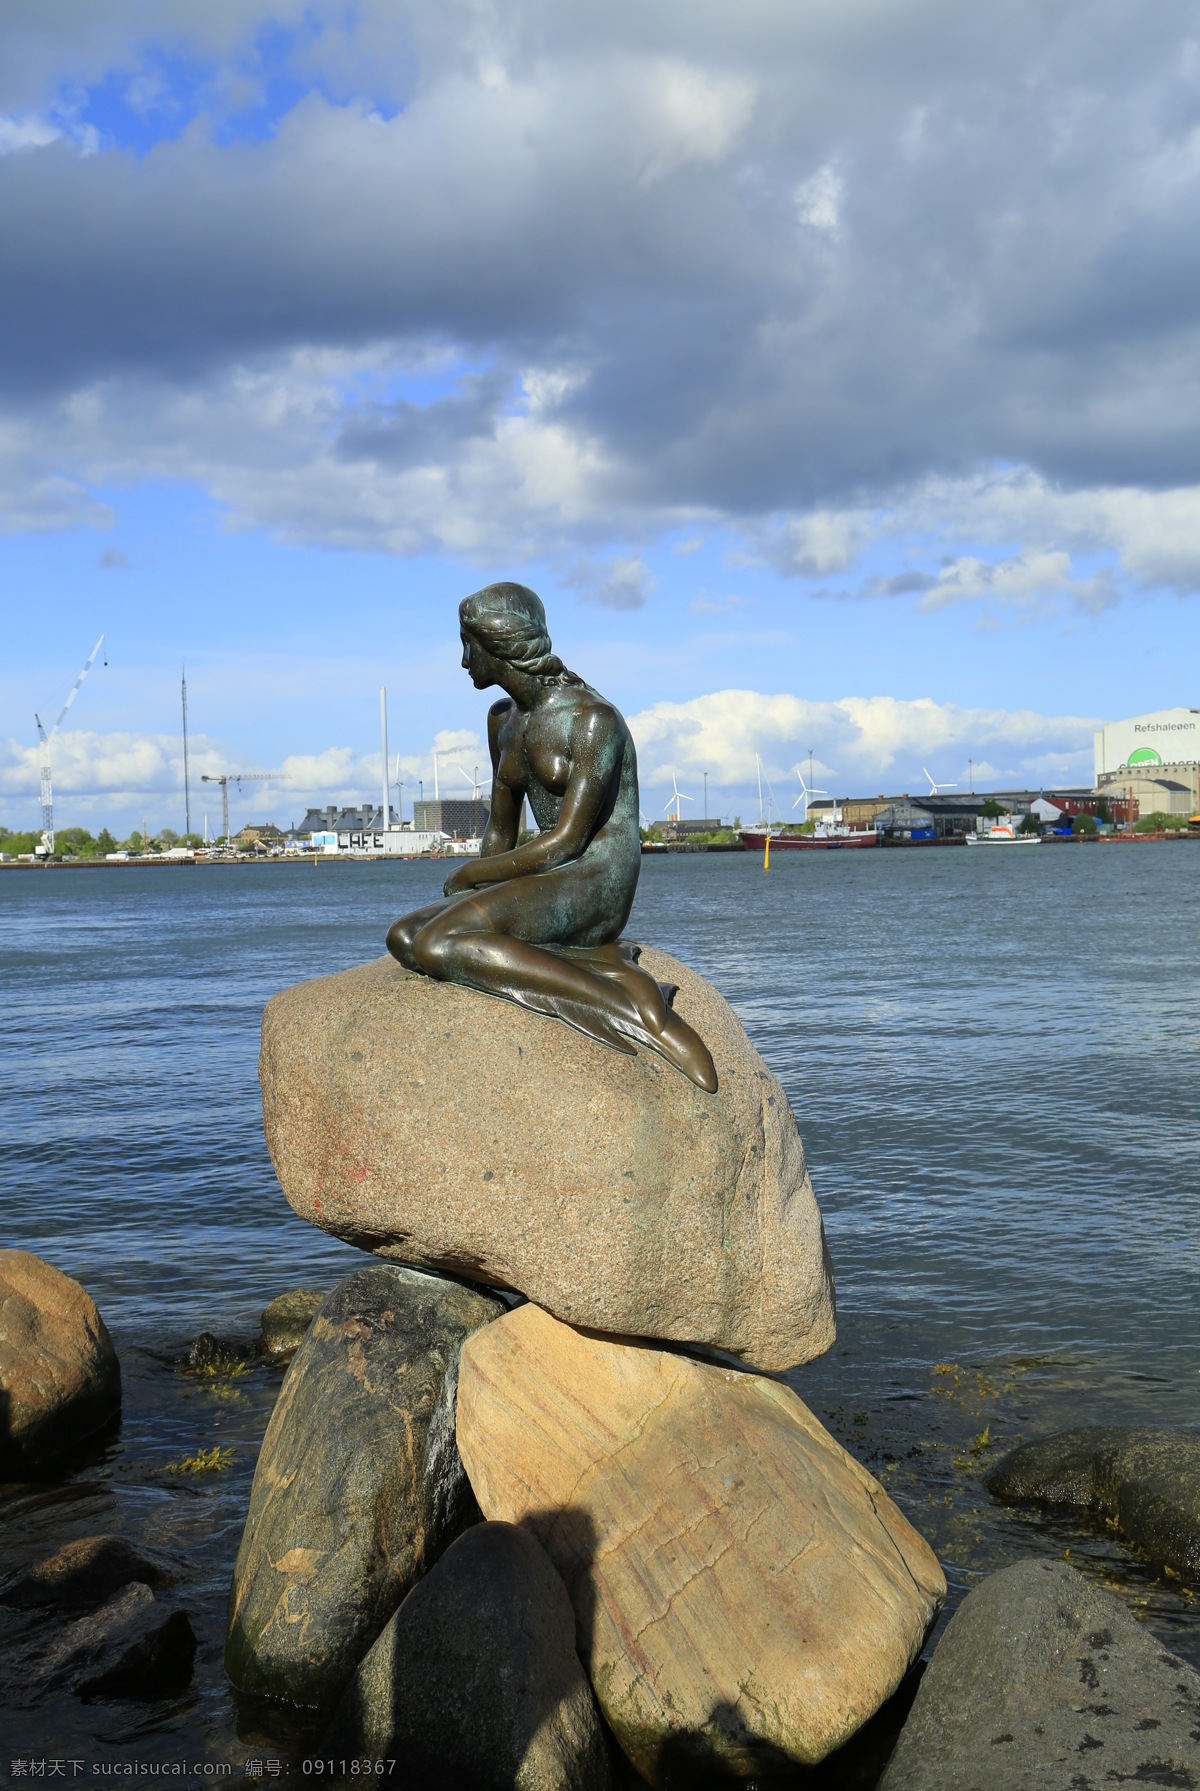 美人鱼 北欧四国 丹麦 首都 哥本哈根 海的女儿 旅游摄影 国外旅游